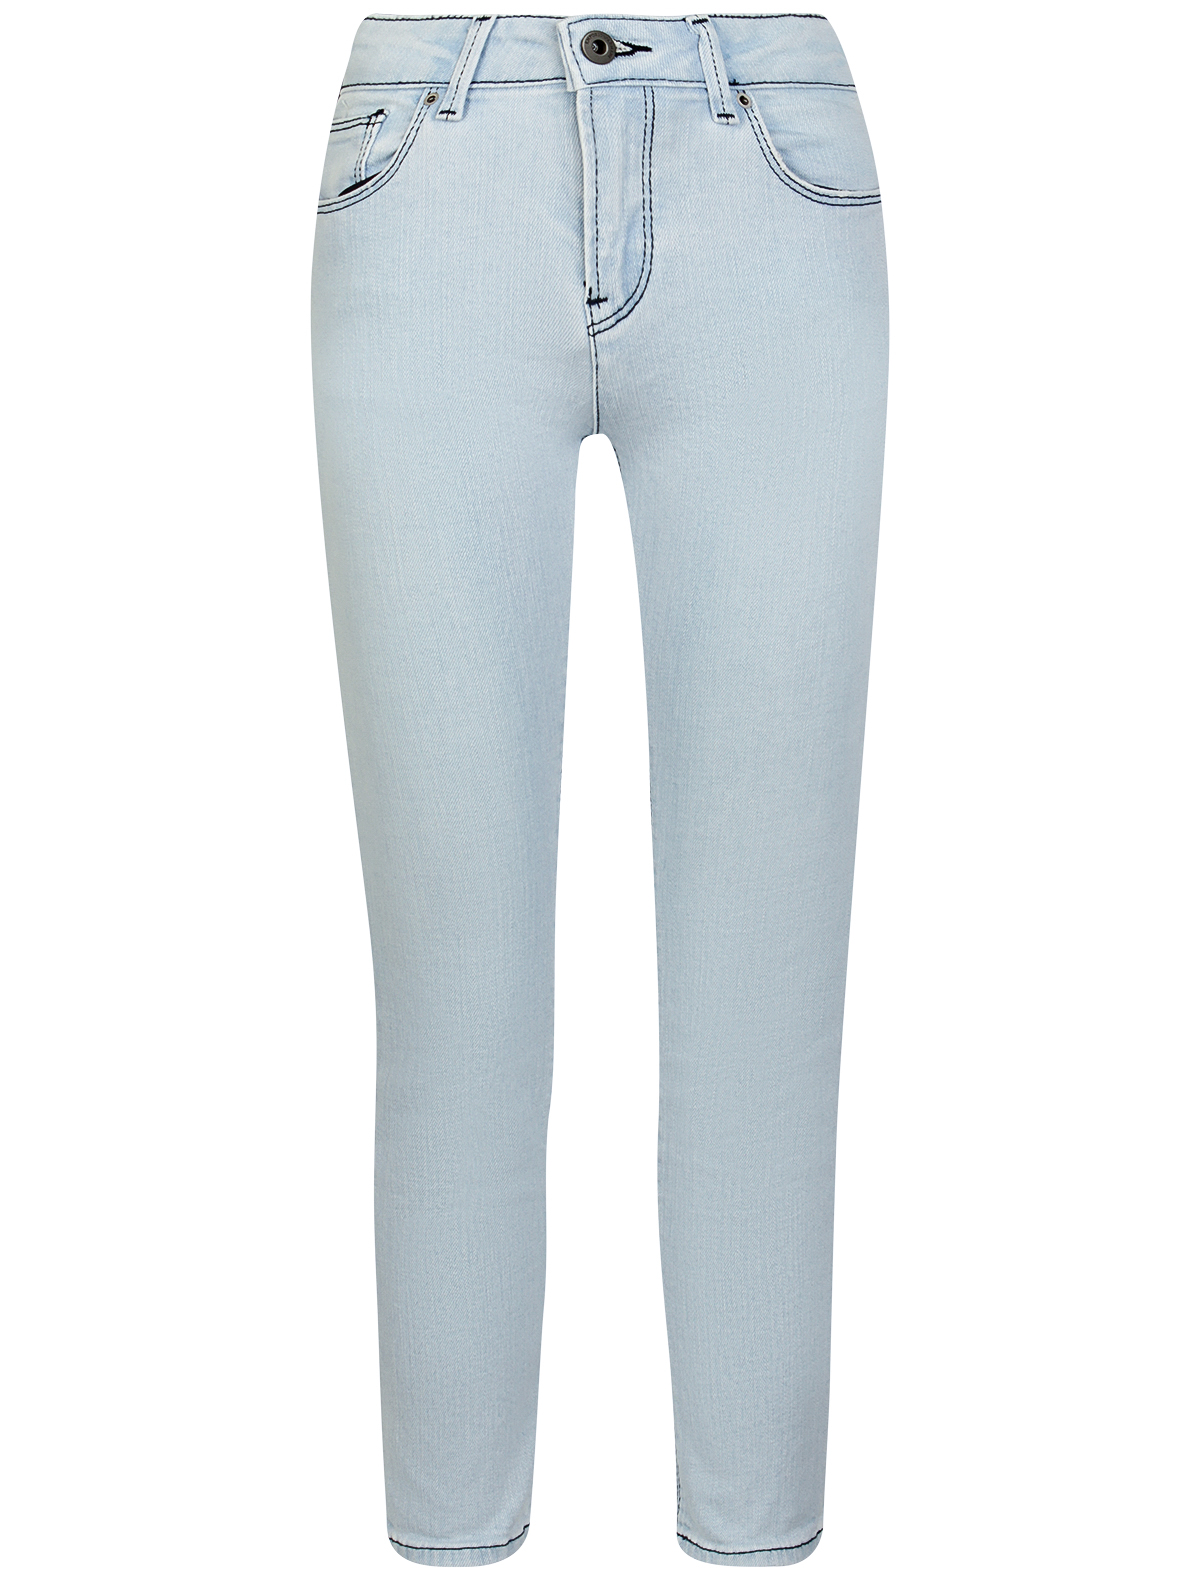 джинсы emporio armani для мальчика, голубые